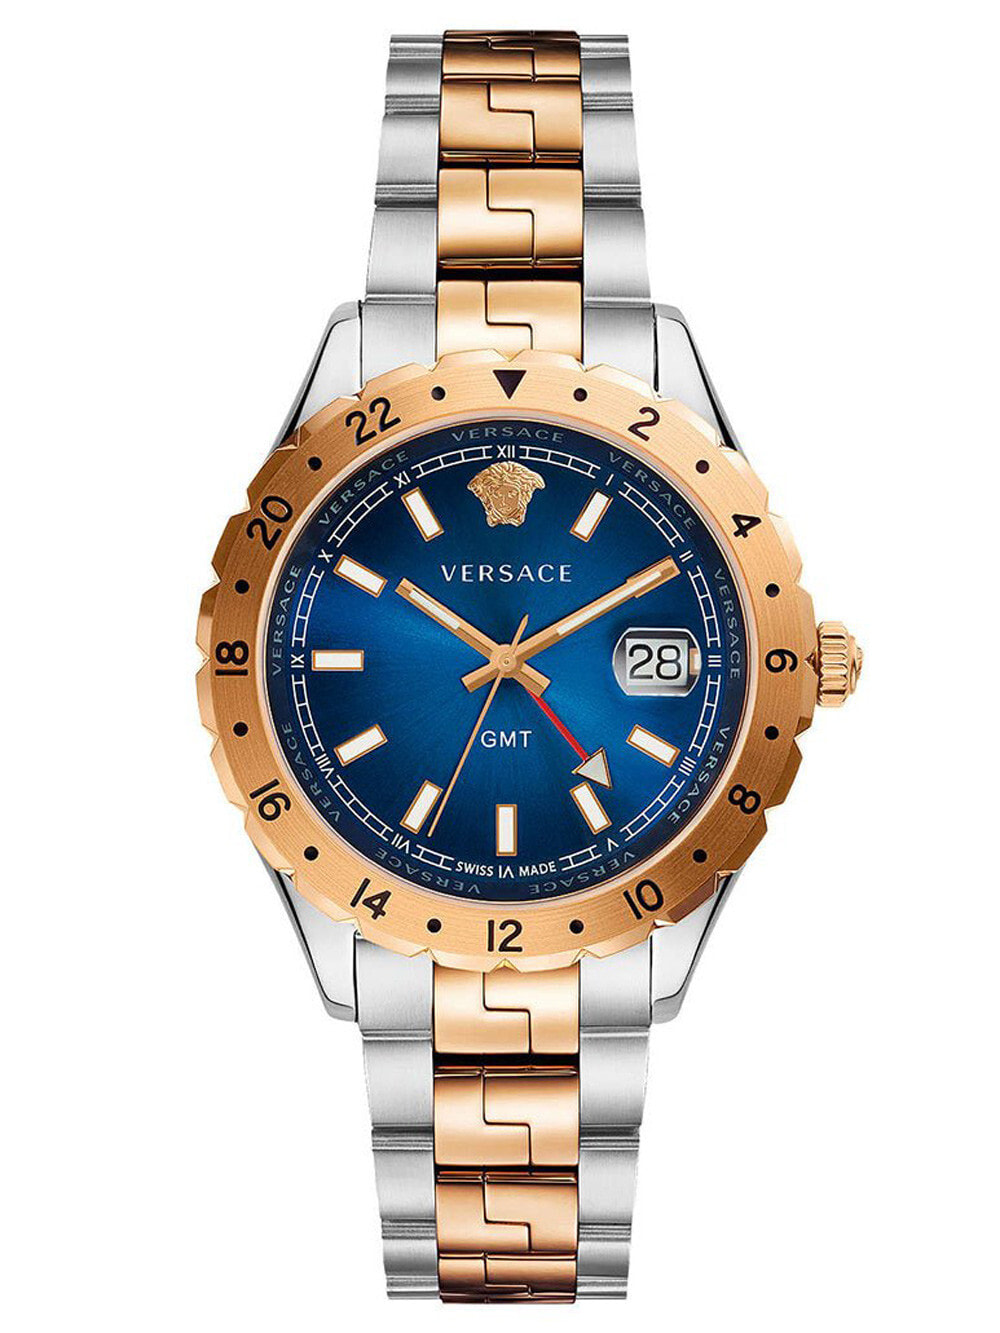 Мужские наручные часы с серебряным браслетом Versace V11060017 Hellenyium Mens 42mm 5ATM